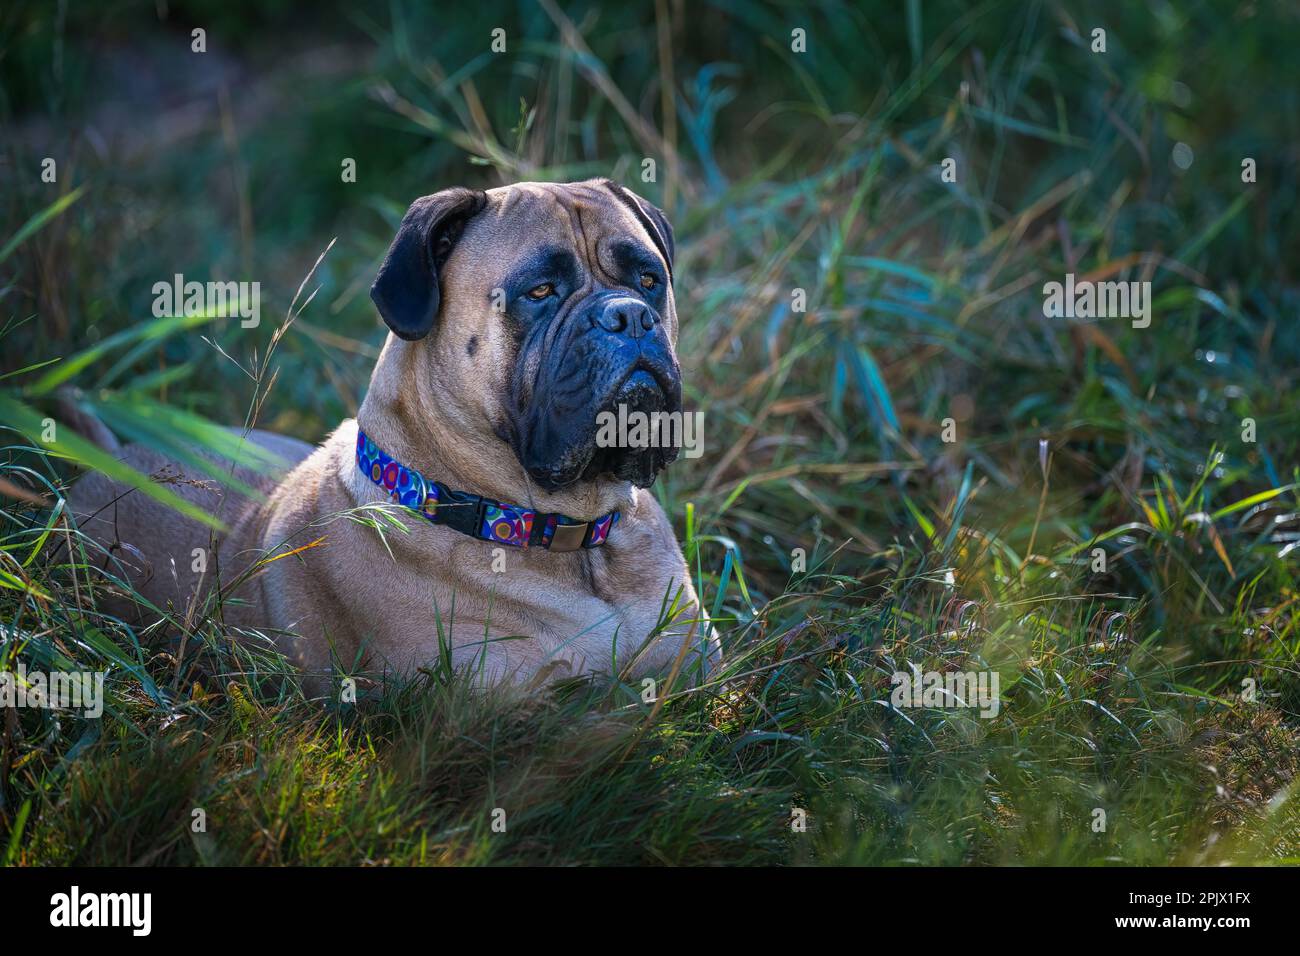 Un Bullmastiff allerta si trova in una lussureggiante erba verde, indossando un colletto e guardando con i suoi occhi saggi e accattivanti Foto Stock